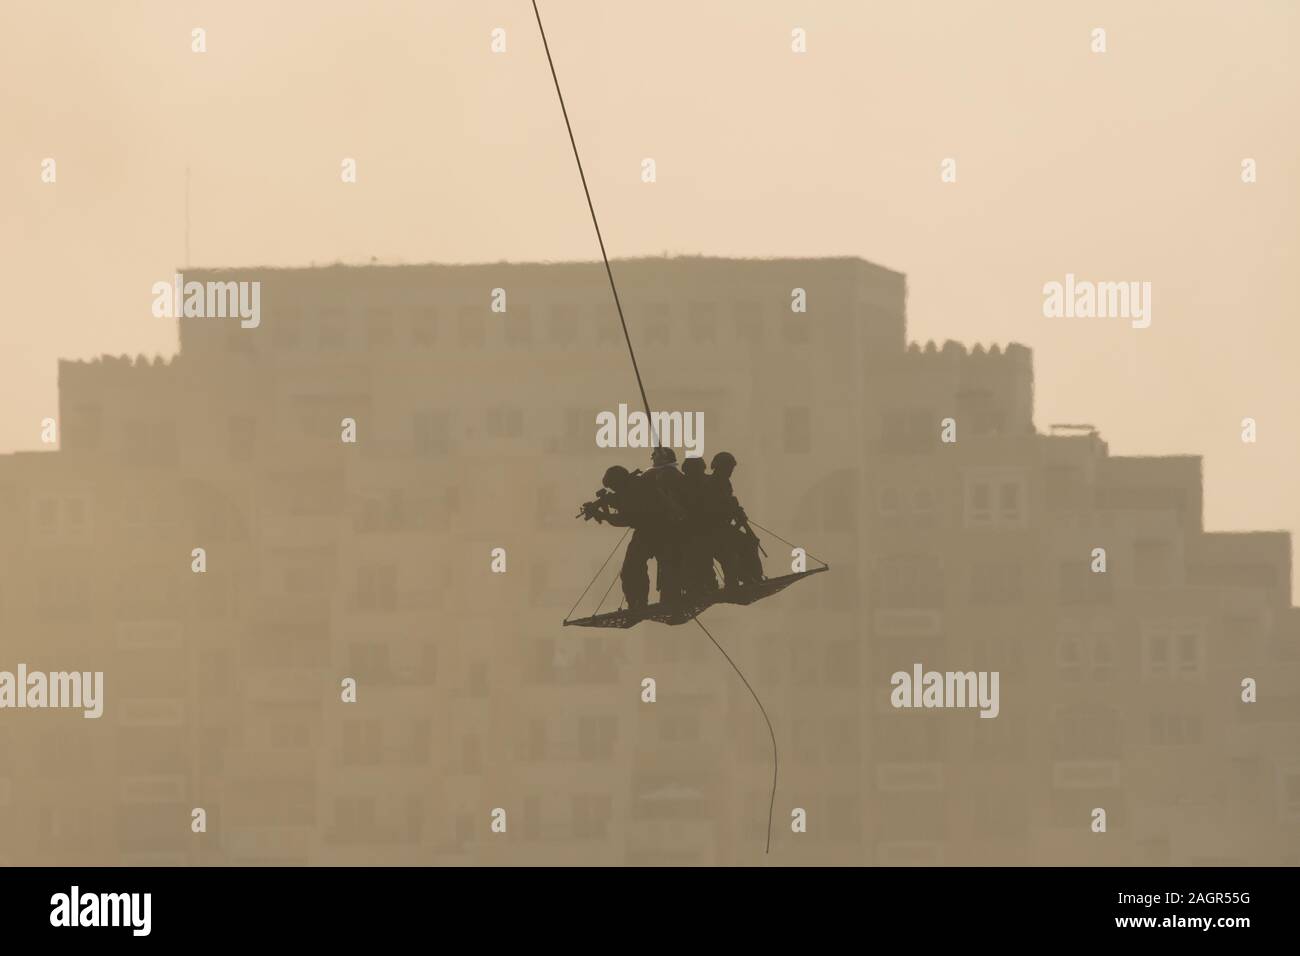 Militärische Team in Konflikt Rettung durch Helikopter. durch die Luft fliegen auf einem Seil befestigt im Rauch und Dunst in den Nahen Osten zu Häcksler Stockfoto